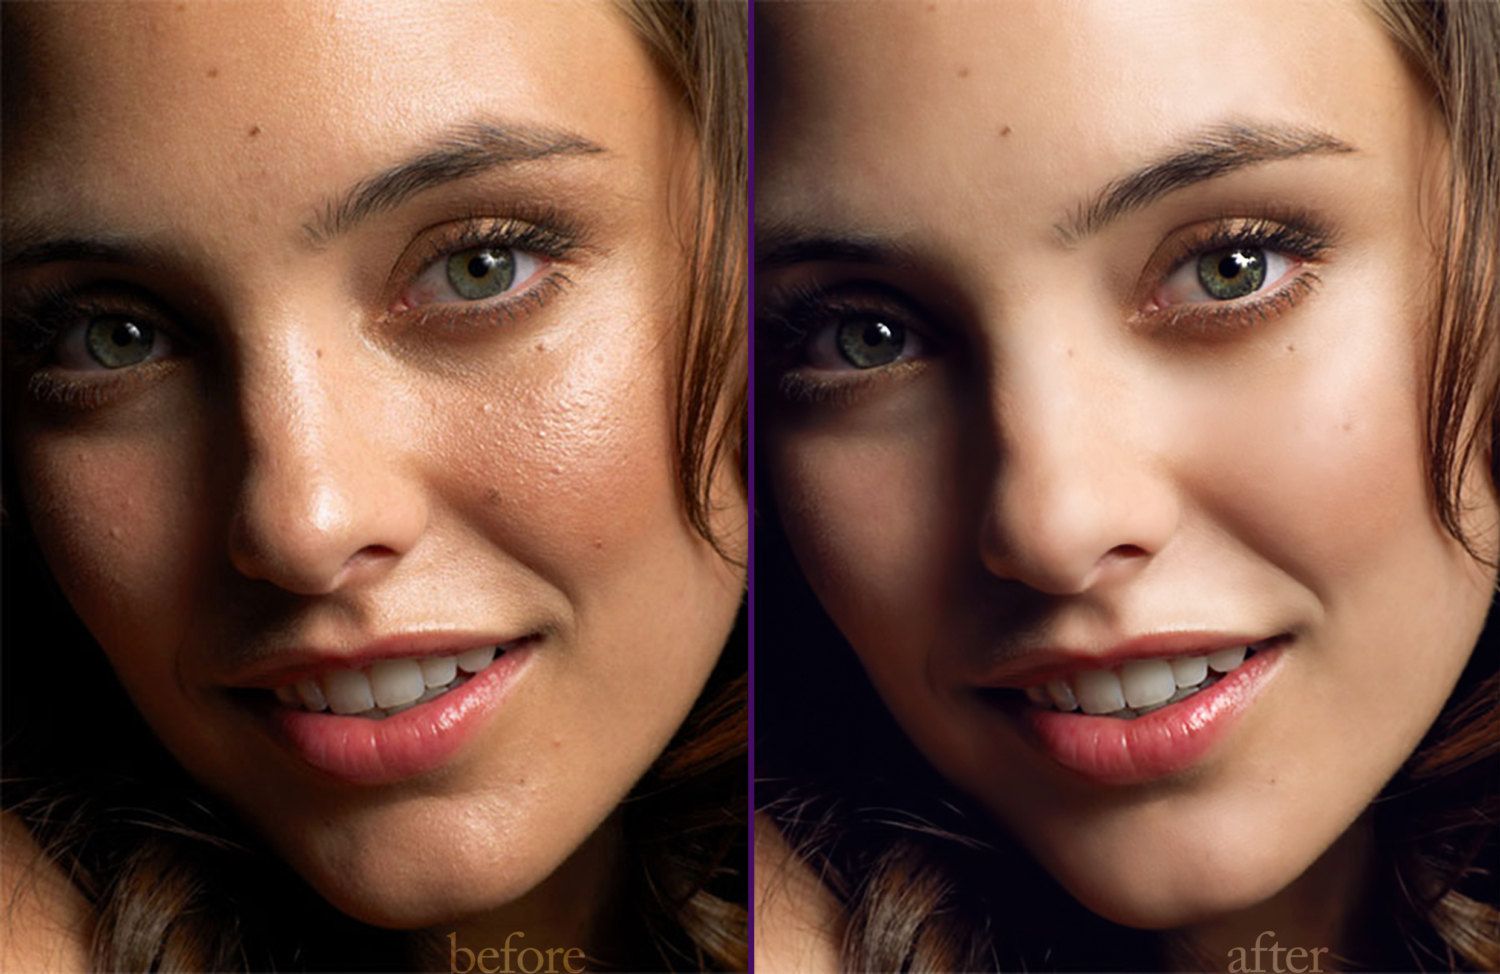 Частотное разложение в Фотошоп - ретушь с применением фильтров Цветовой контраст и Размытие по Гауссу Этот метод дает максимально естественный результат